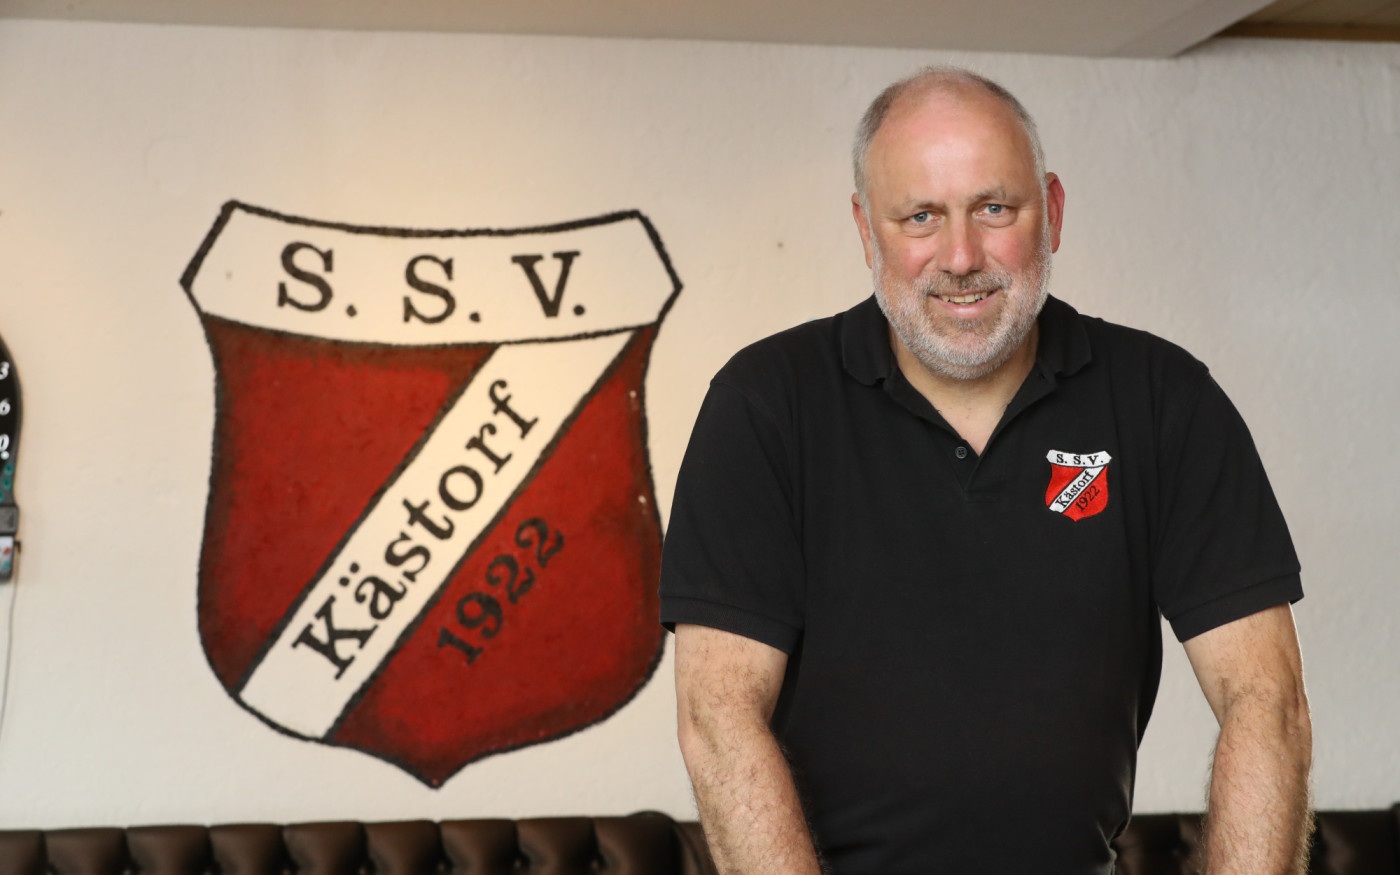 Der SSV ist meine Heimat, das transportiere ich - Kästorfs Vorsitzender Ingo Düsterhöft spricht über seinen Herzensverein